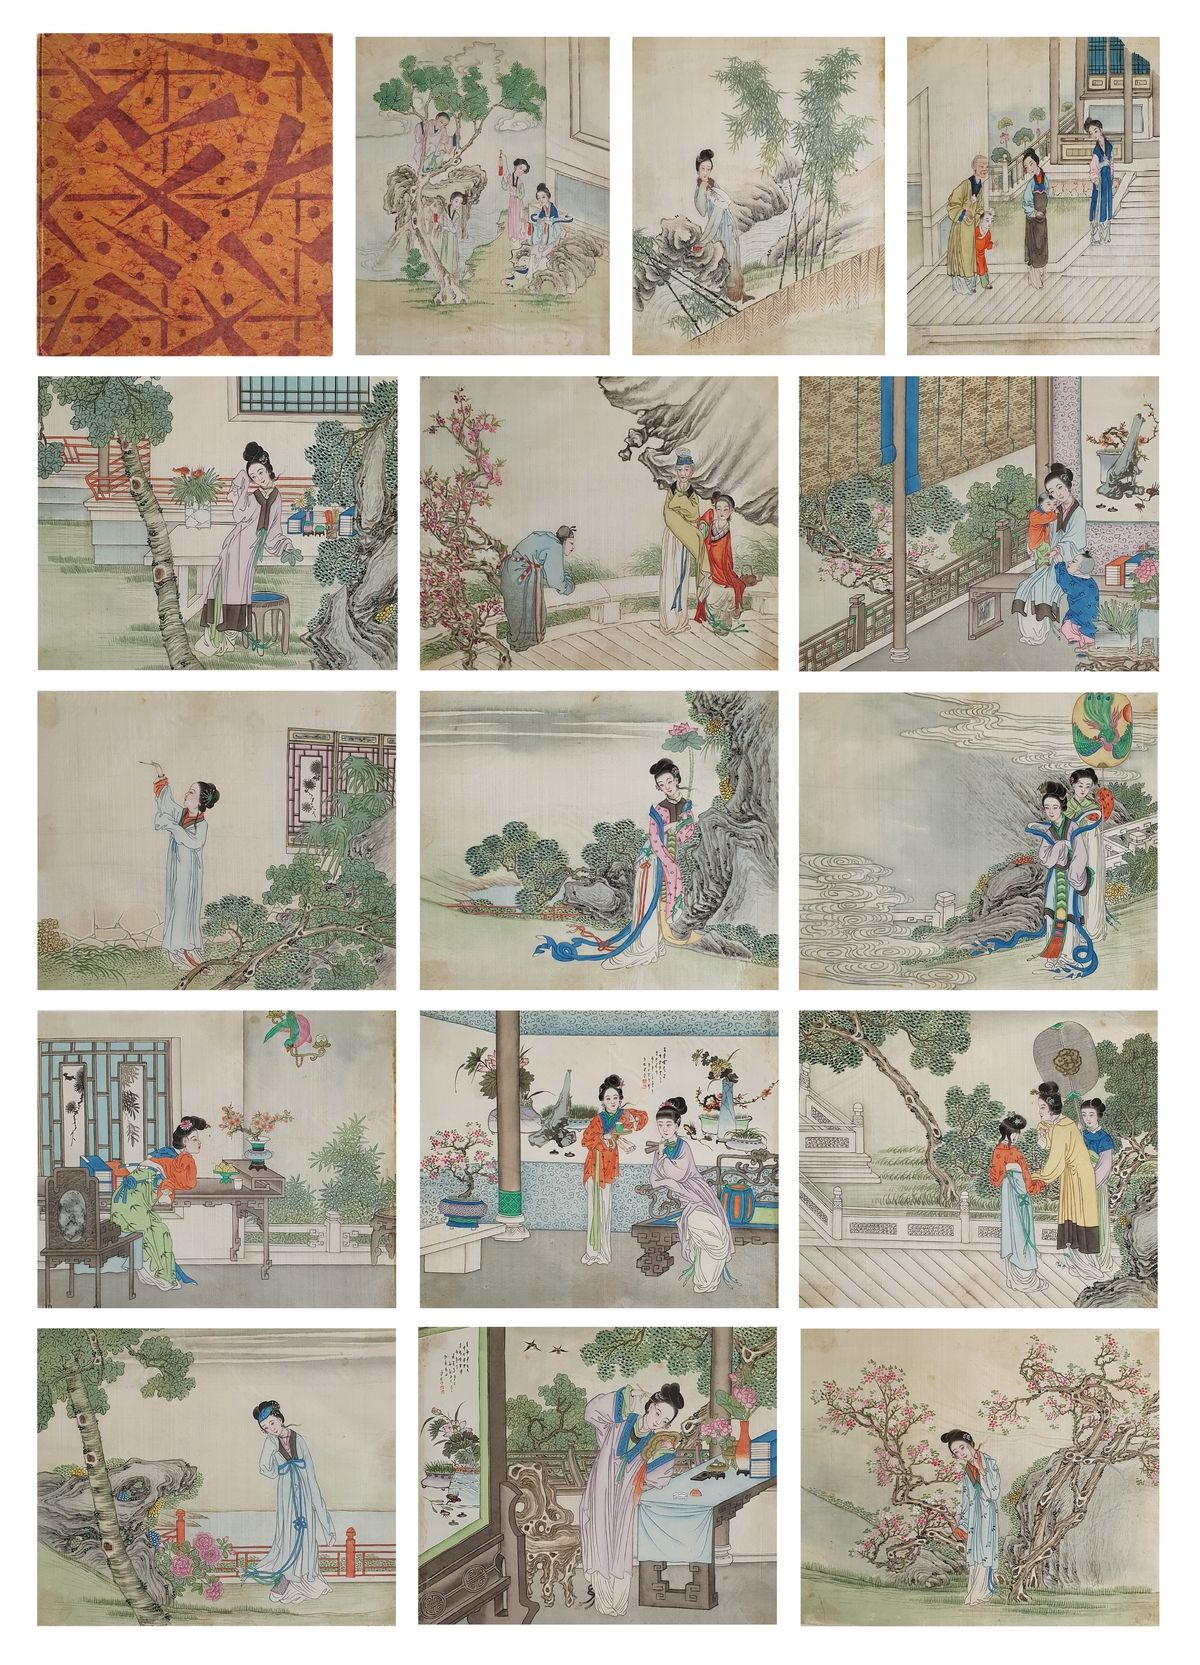 CHINE ca.1900 Scenes of life
Portafoglio contenente 15 dipinti a tempera su cart&hellip;